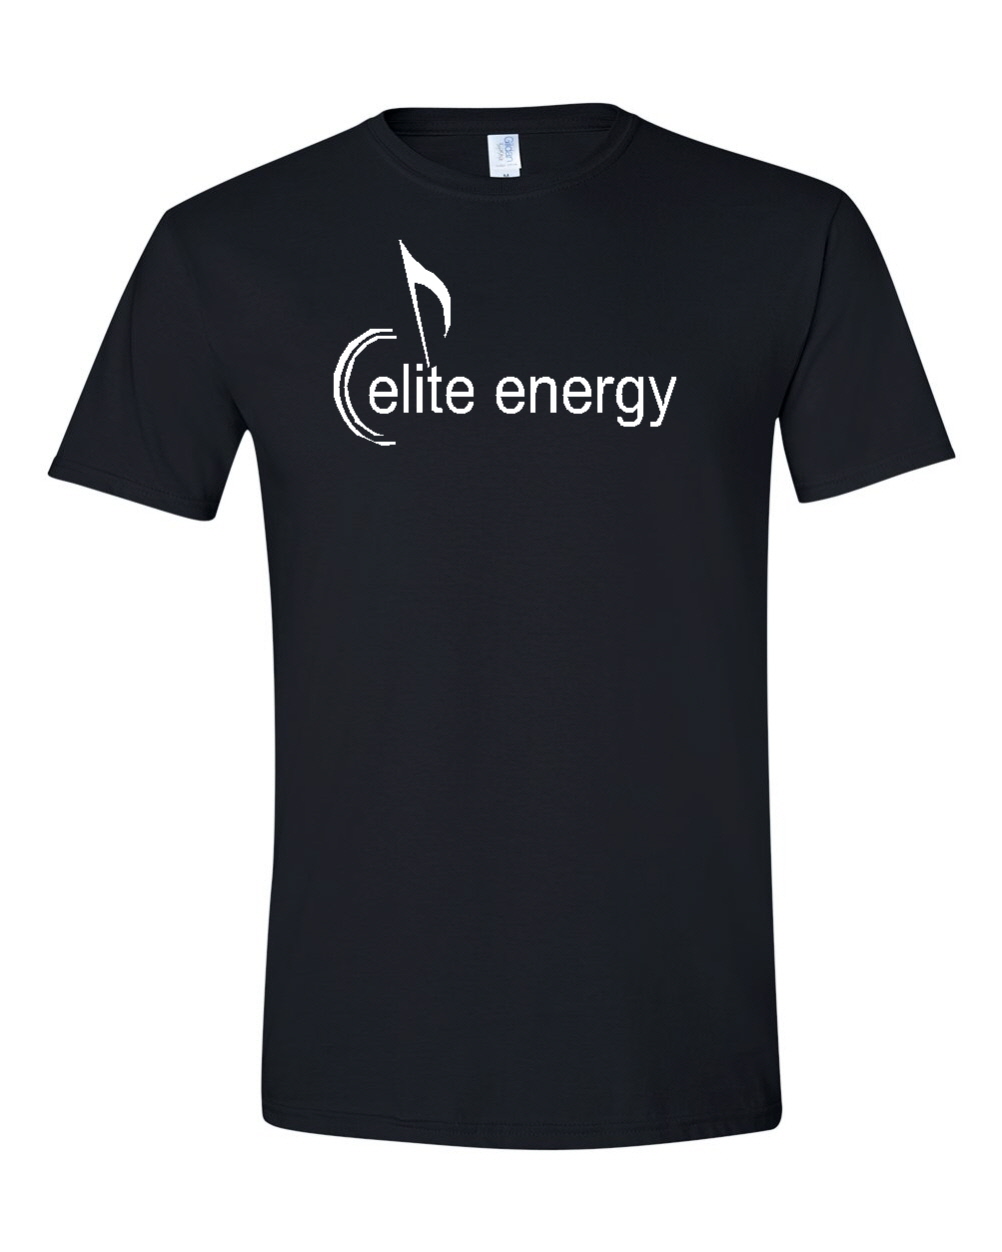 Elite Energy